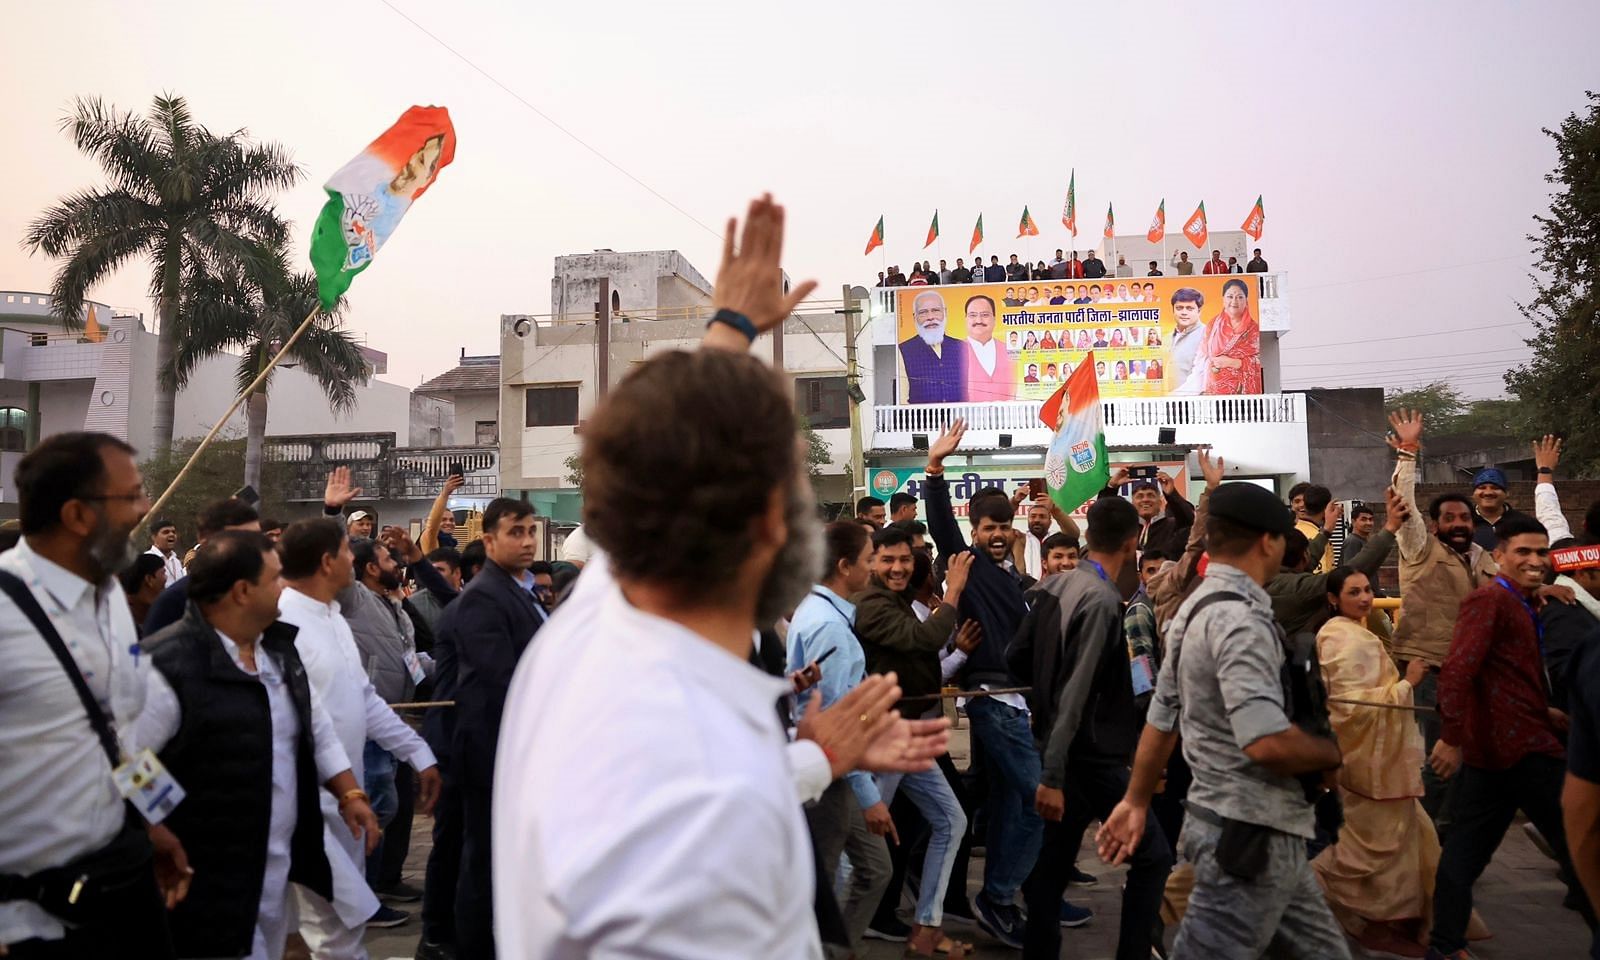 ಬಿಜೆಪಿ ಕಚೇರಿ ಮೇಲೆ ನಿಂತಿರುವವರಿಗೆ ಕೈ ಬೀಸುತ್ತಿತುವ ರಾಹುಲ್ ಗಾಂಧಿ (ಚಿತ್ರ– ಟ್ವಿಟರ್ @Rajasthan_PYC)